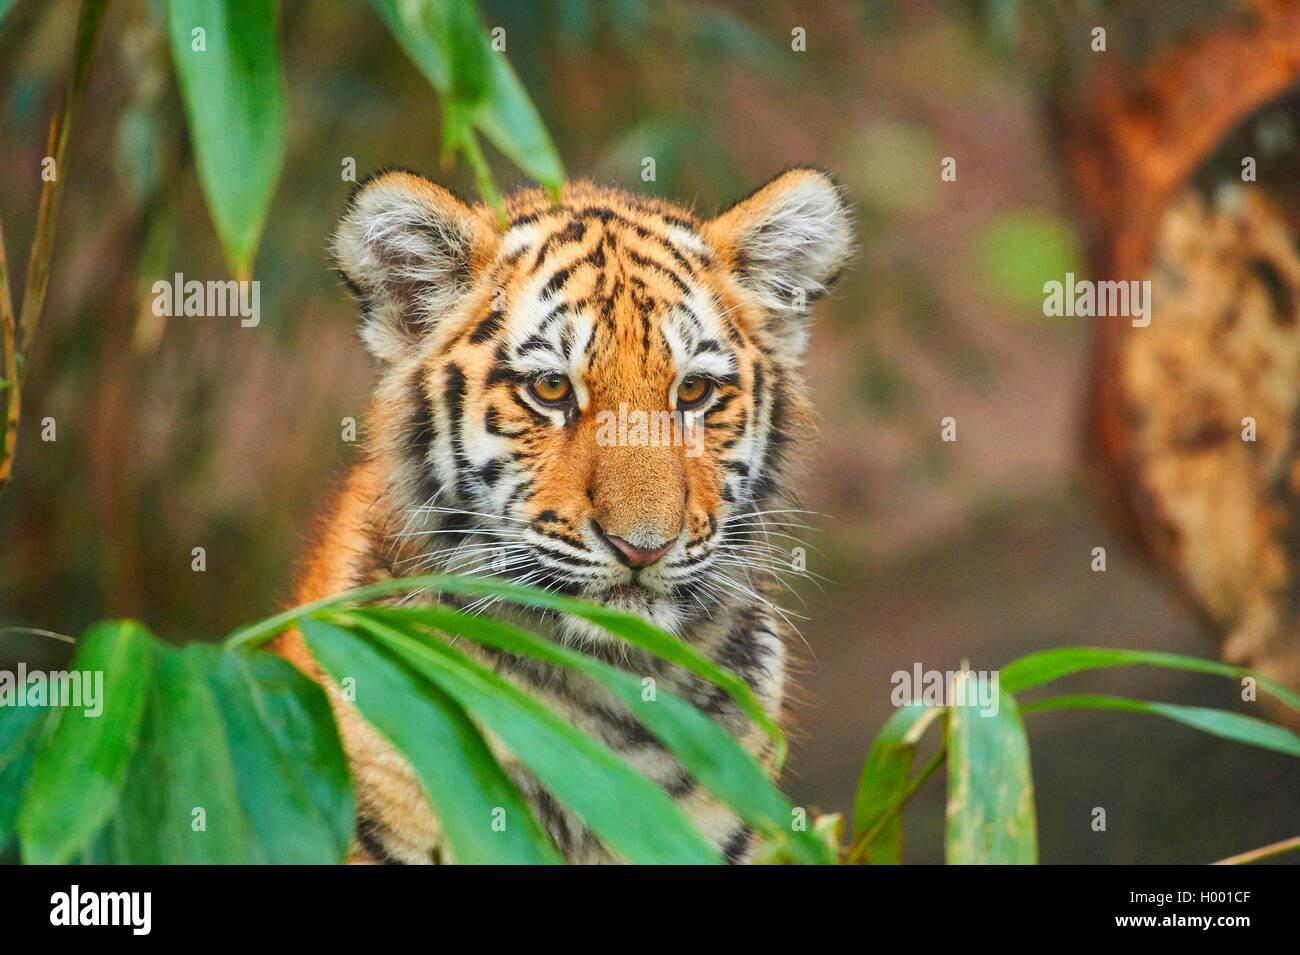 Siberian tiger, Amurian tiger (Panthera tigris altaica), young animal, portrait Stock Photo